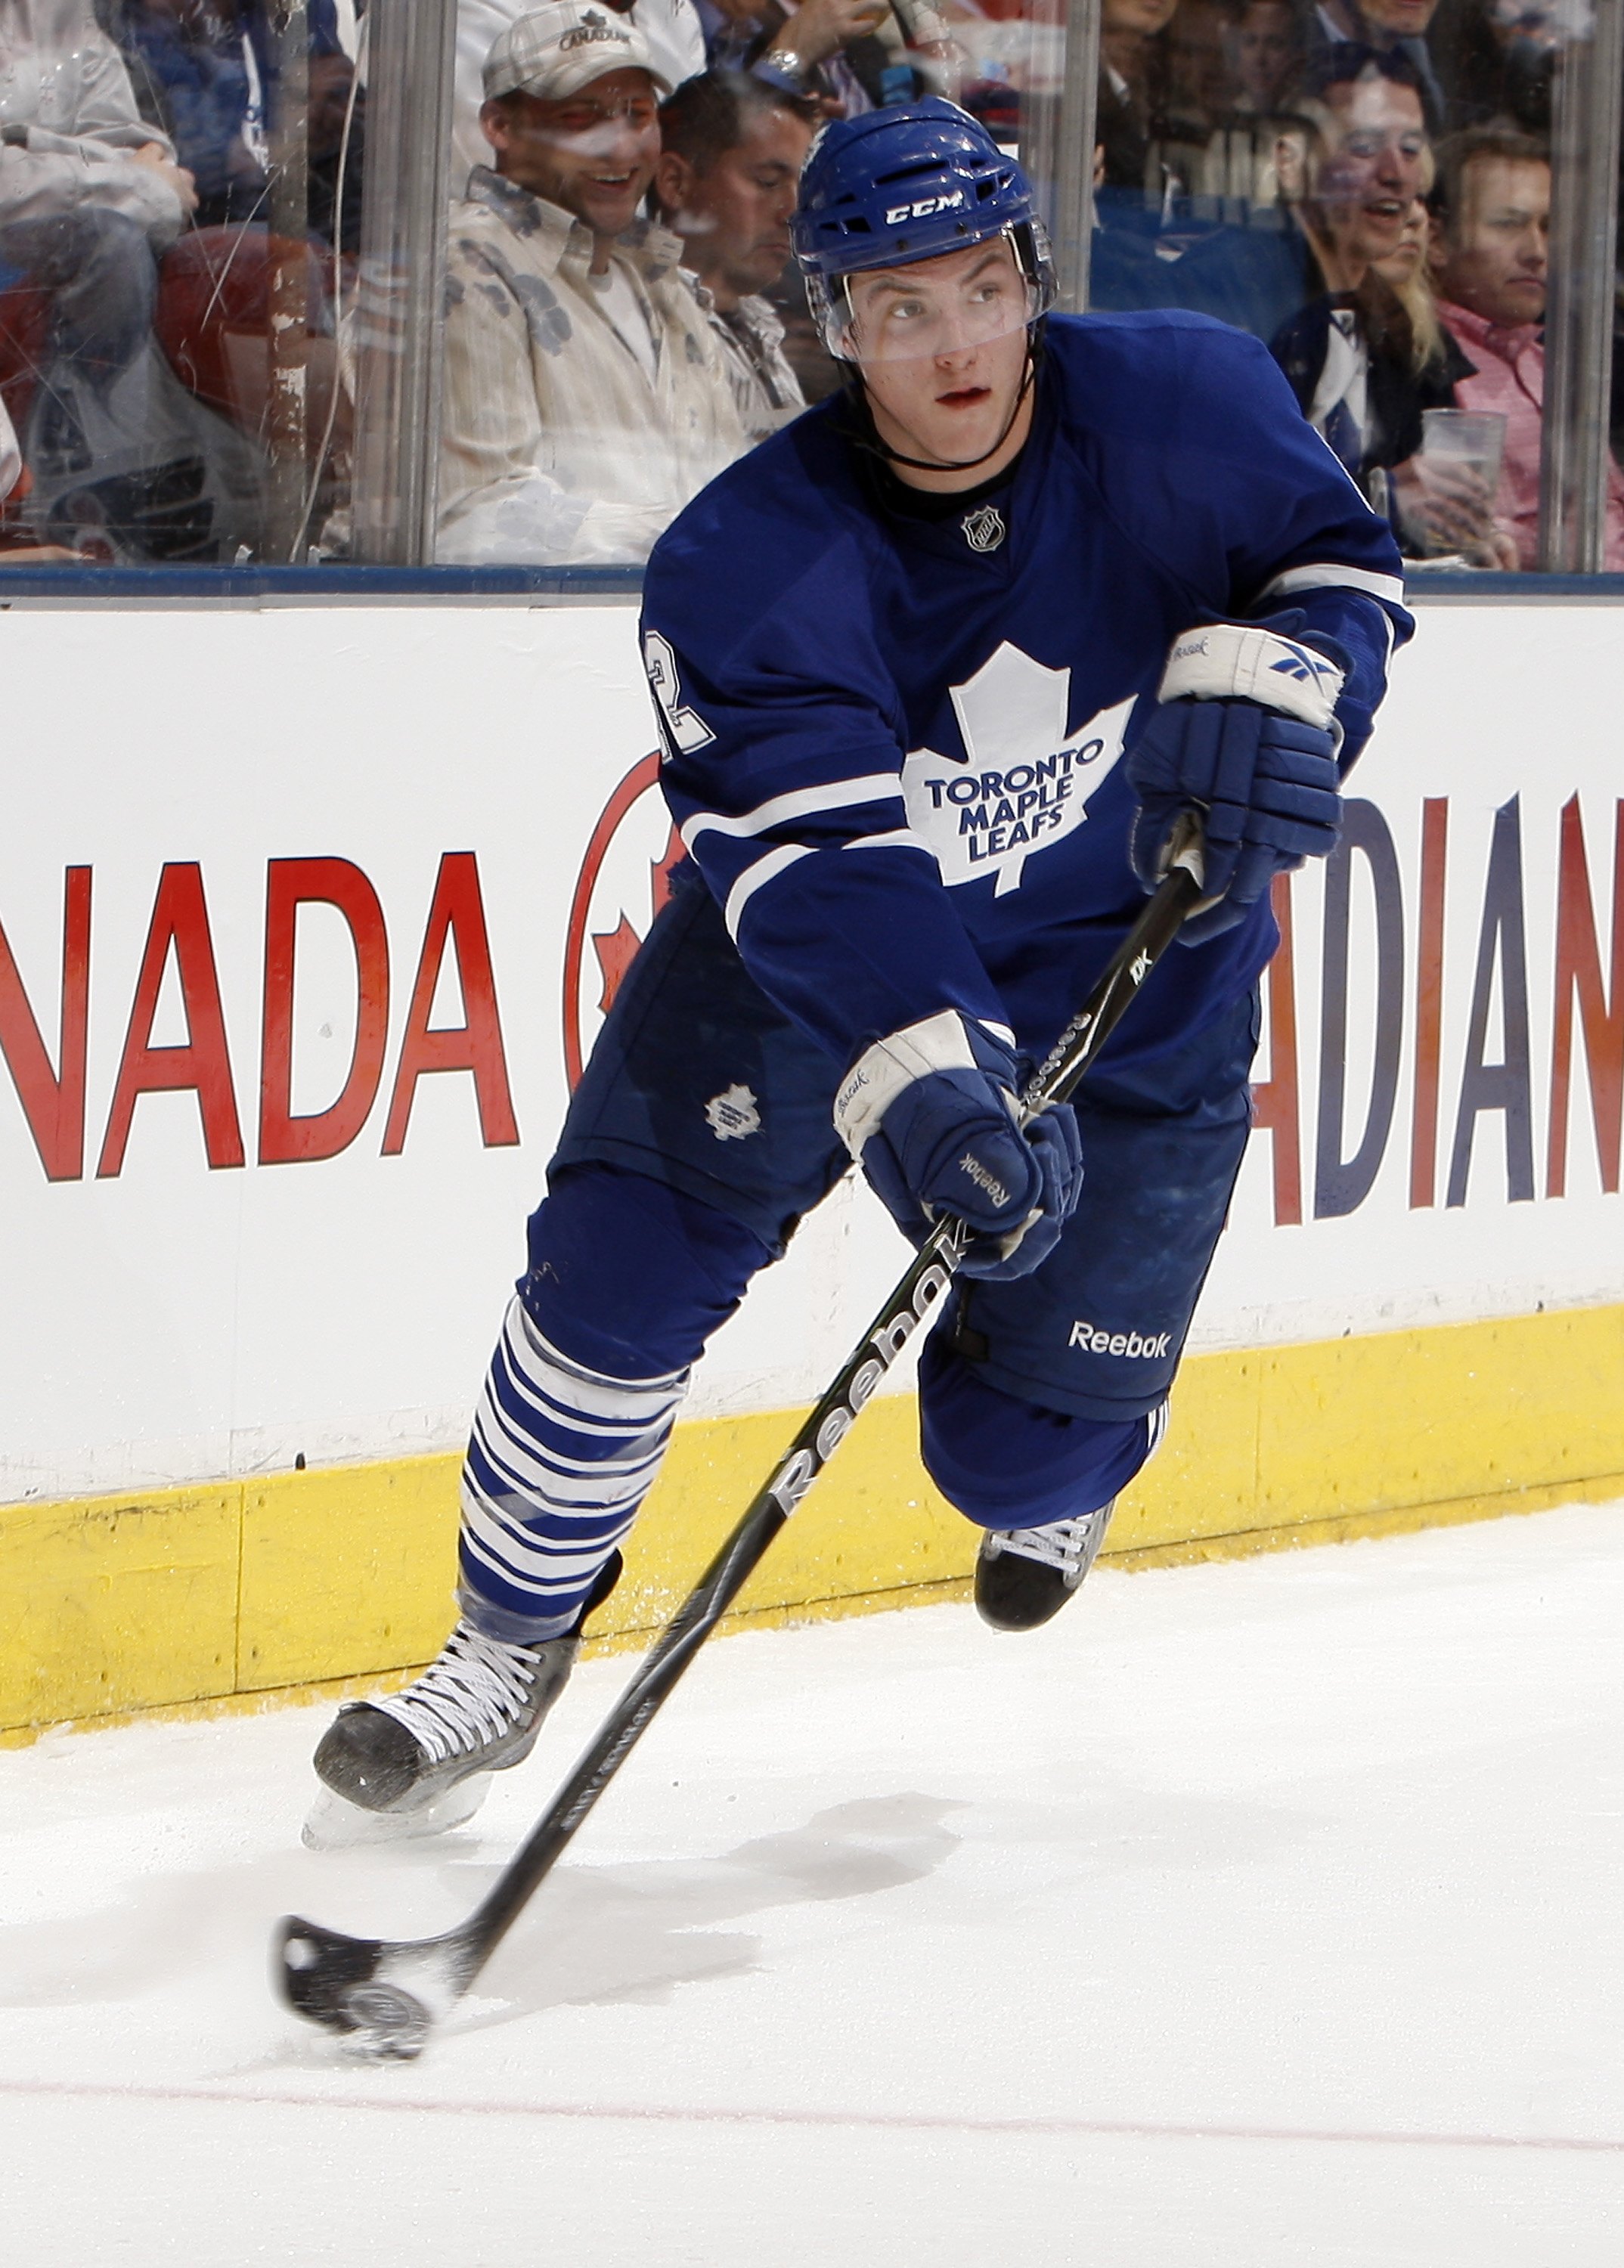 AUTHENTIC Ryan Kesler #17 VANCOUVER CANUCKS NHL JERSEY Reebok - Size 50  STICK